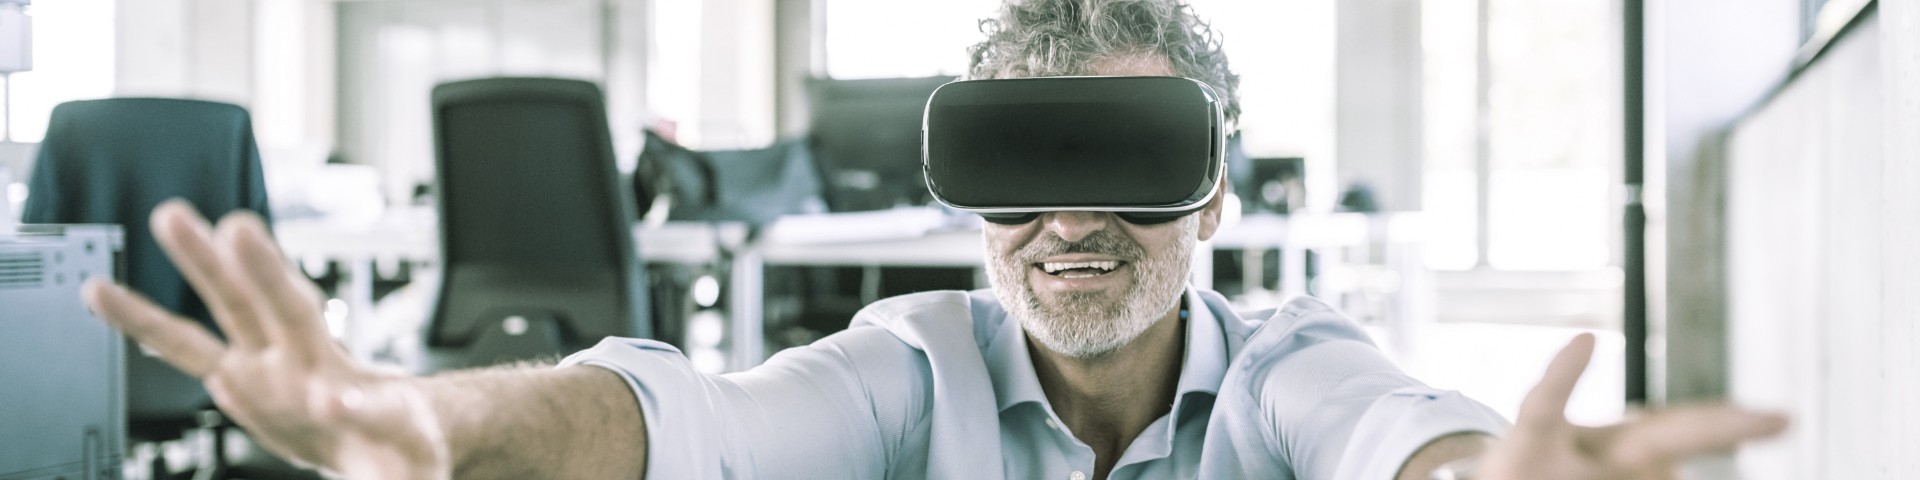 Ein Mitarbeiter probiert im Büro eine VR Brille aus